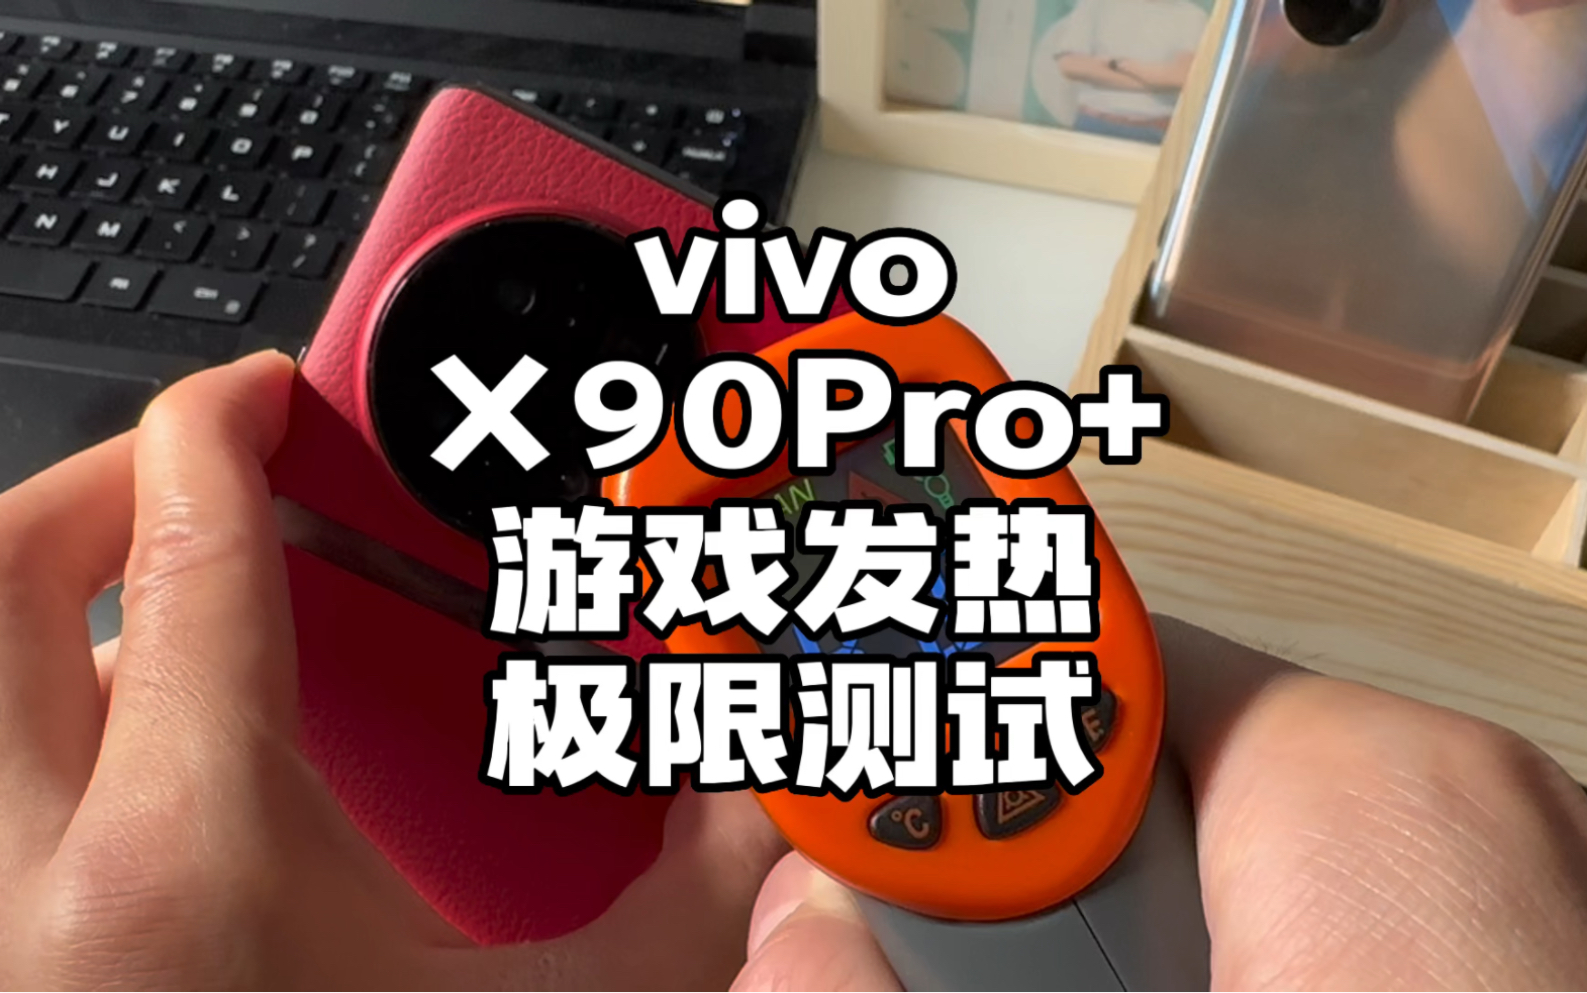 骁龙8gen2翻车了吗？vivoX90Pro+和两台骁龙8+、骁龙8gen1手机游戏实测对比！！！#数码科技 #手机